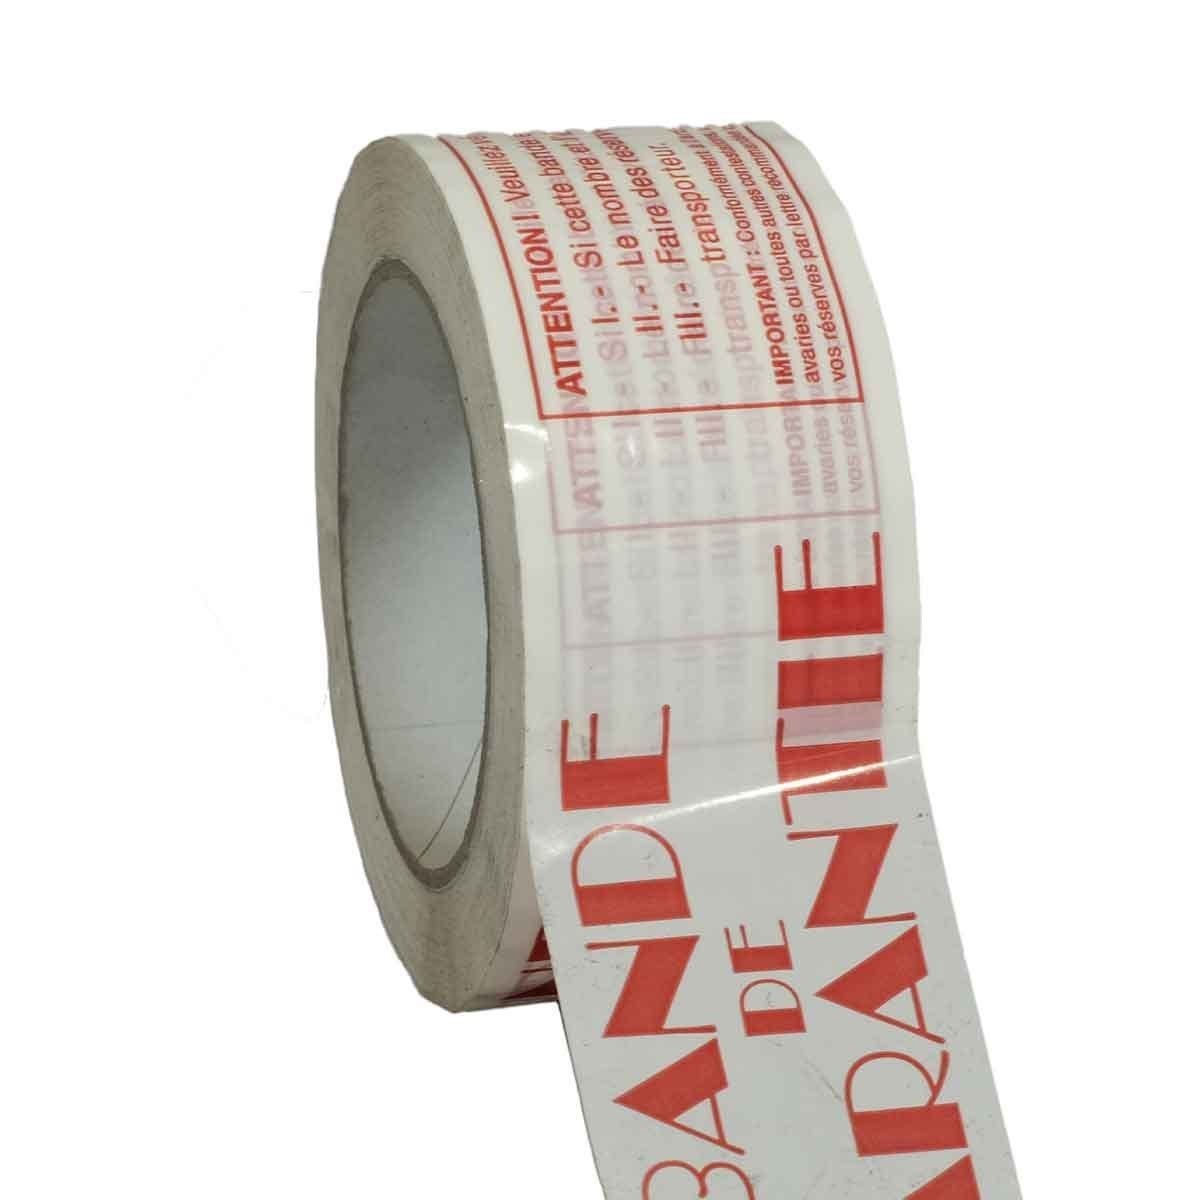 Ruban adhésif d'emballage 28µ blanc imprimé "BANDE DE GARANTIE" en rouge - rouleau d'expédition 50 mm x 100 m - Carton de 36 1